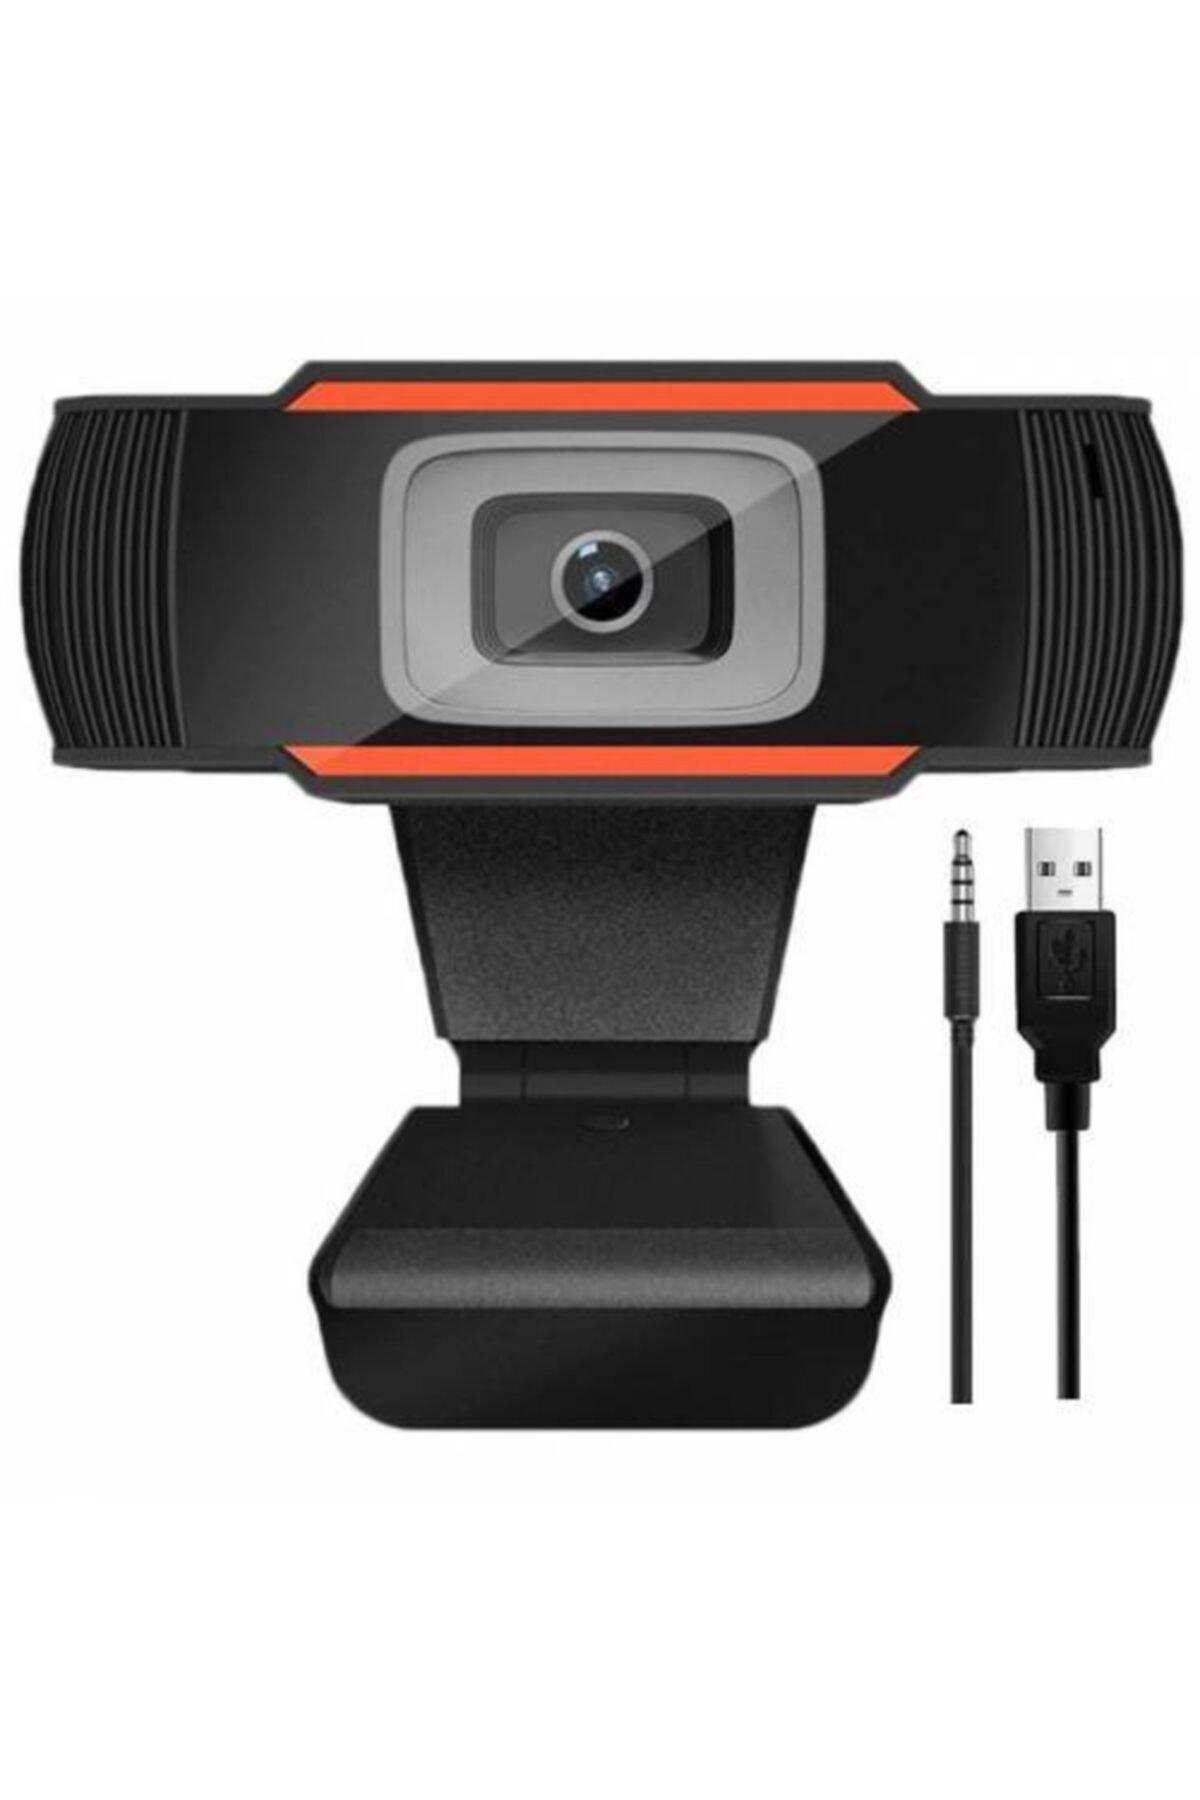 Hd Webcam Kamera 720p  Mikrofonlu Siyah Renk